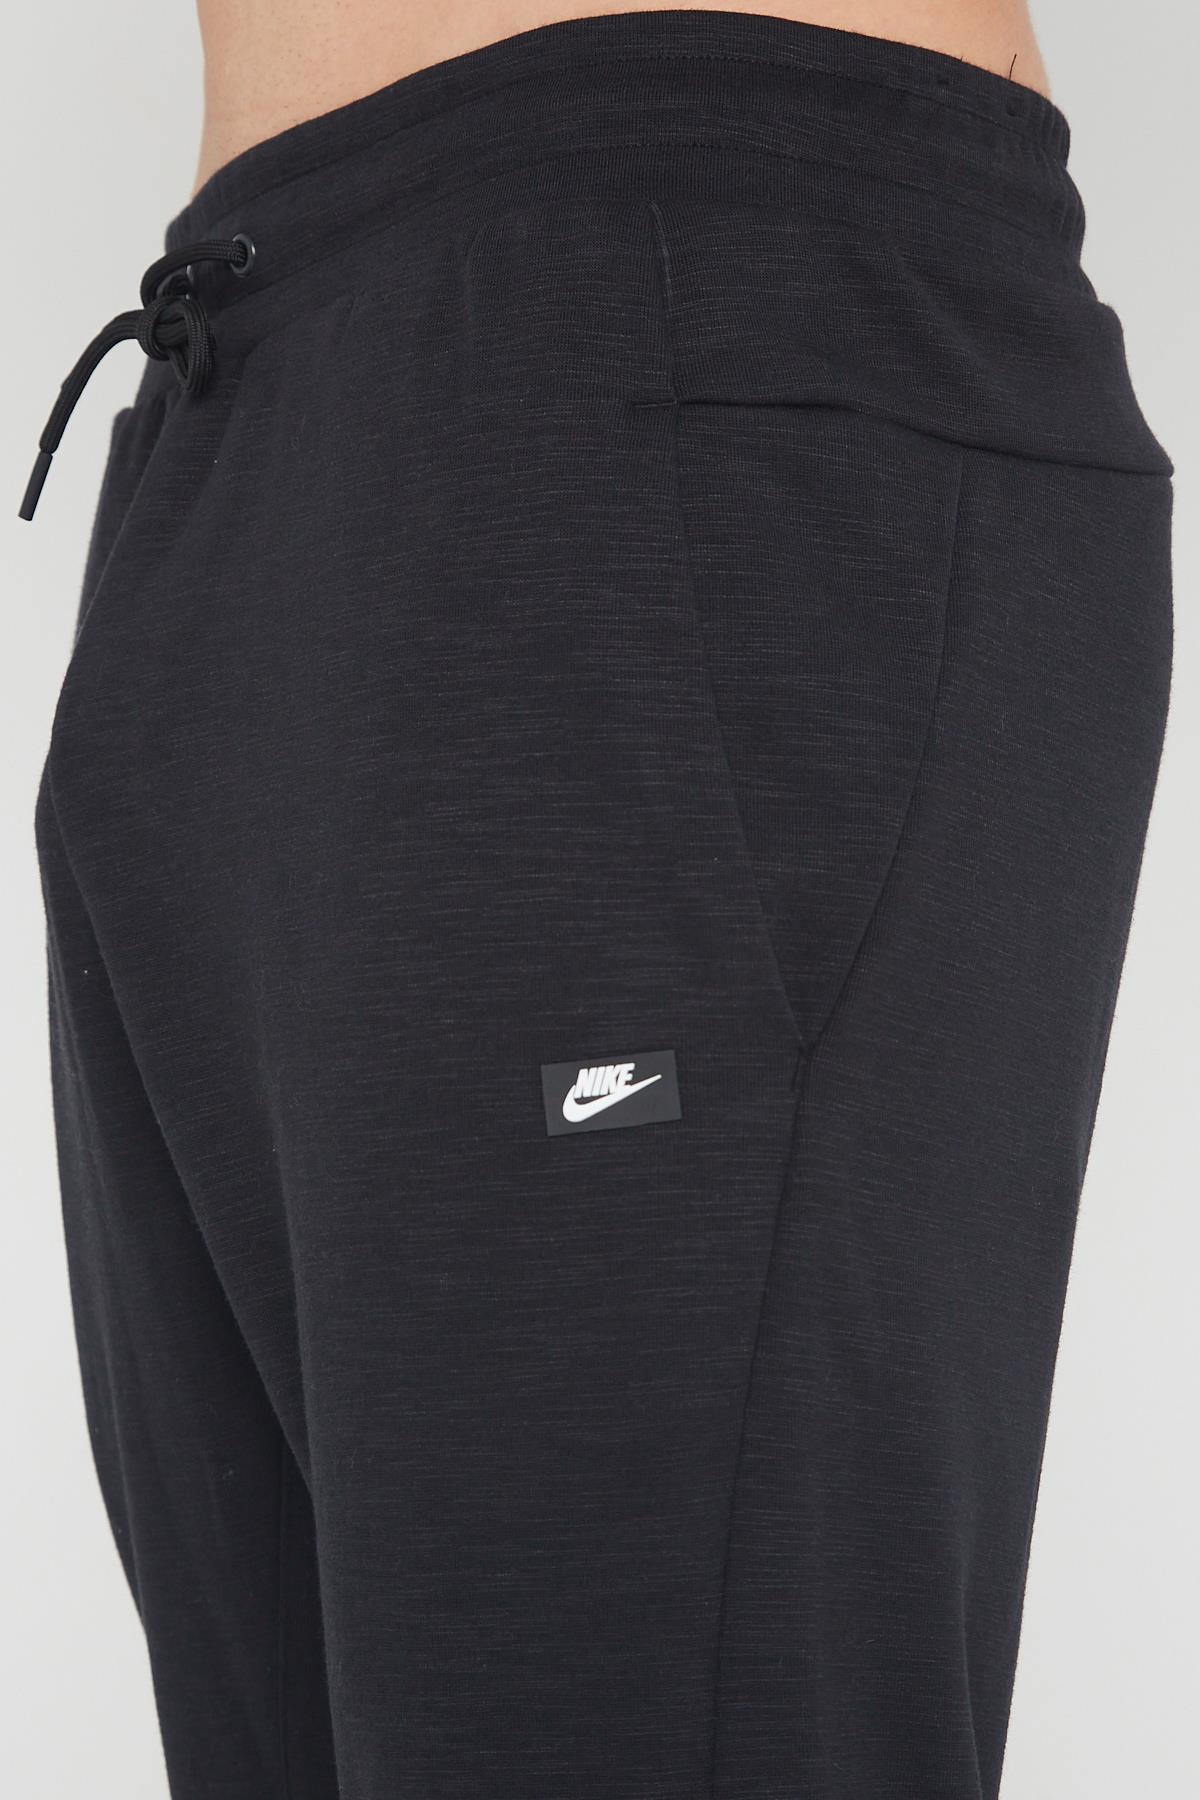 Zeeanemoon Onhandig Kostbaar Nike Sportswear Optic trainingspak voor heren in zwart